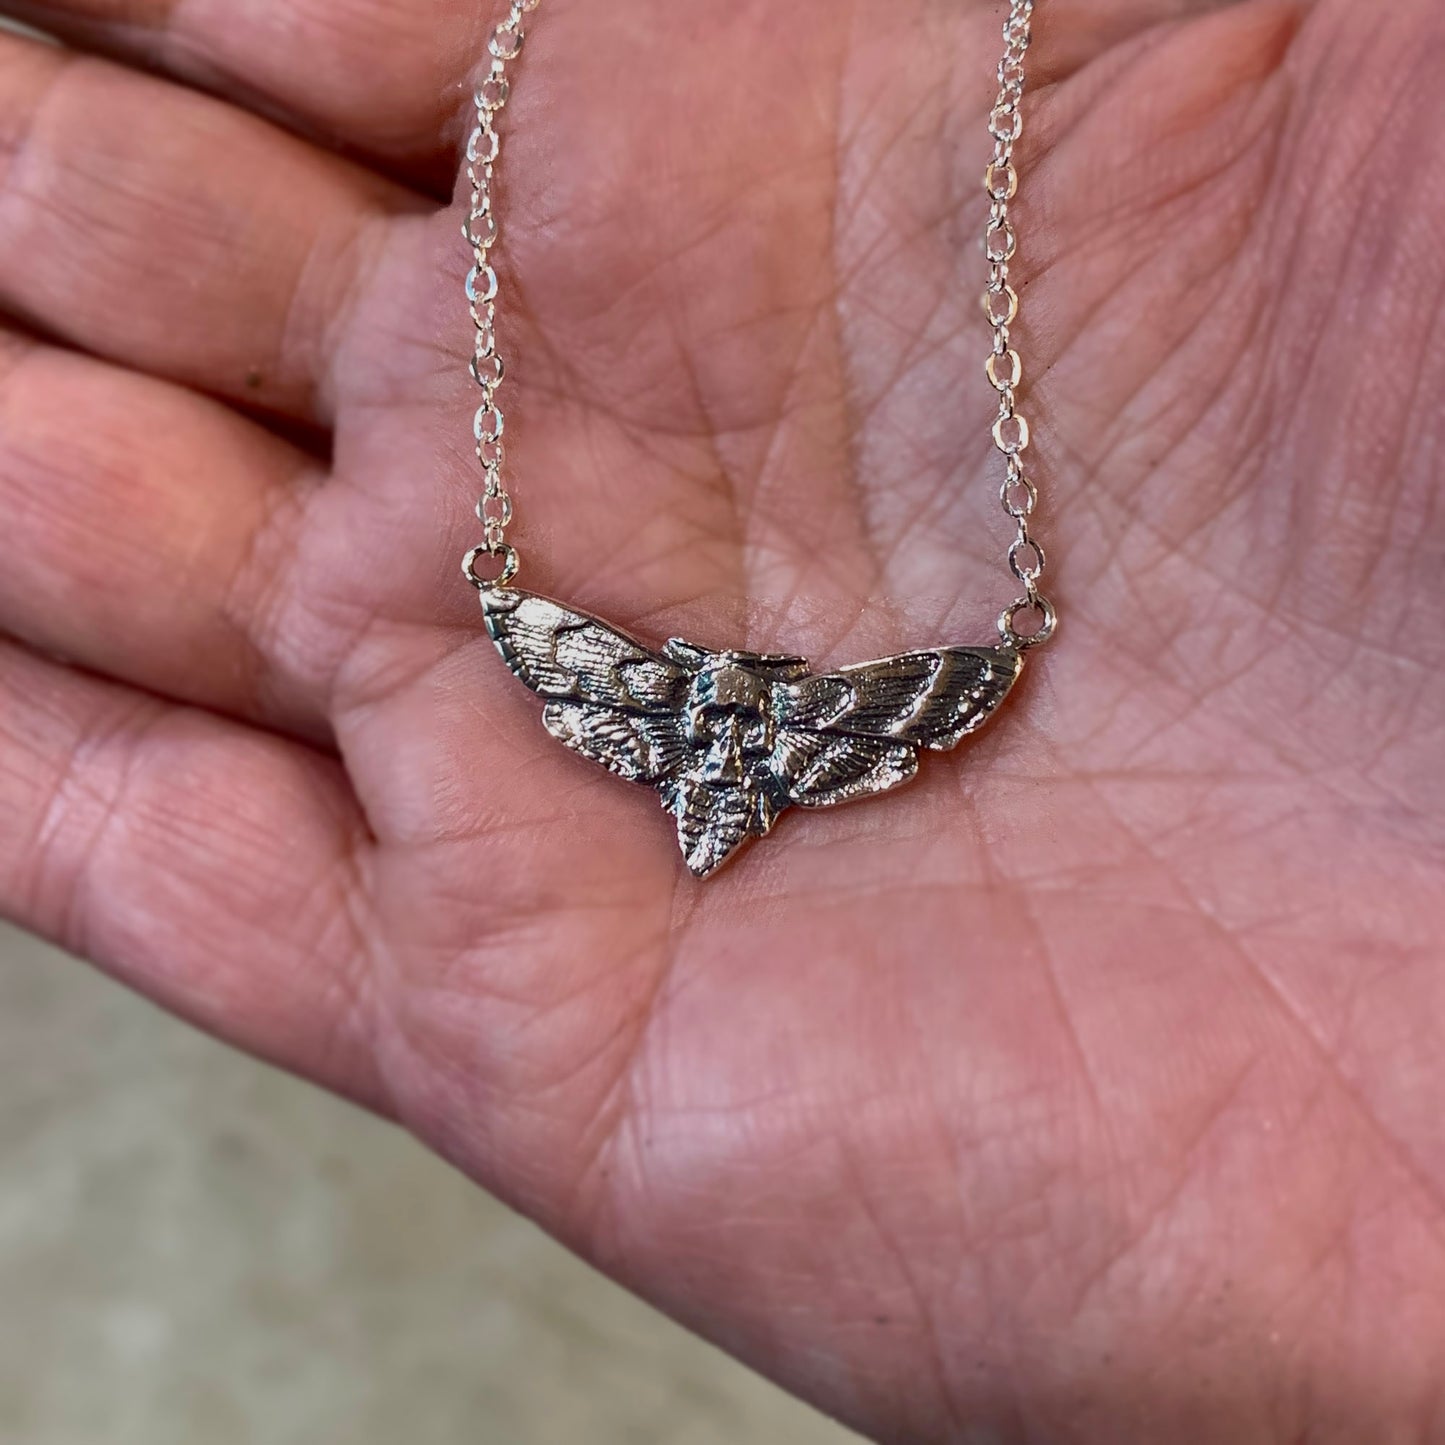 Death Moth Necklace, death moth